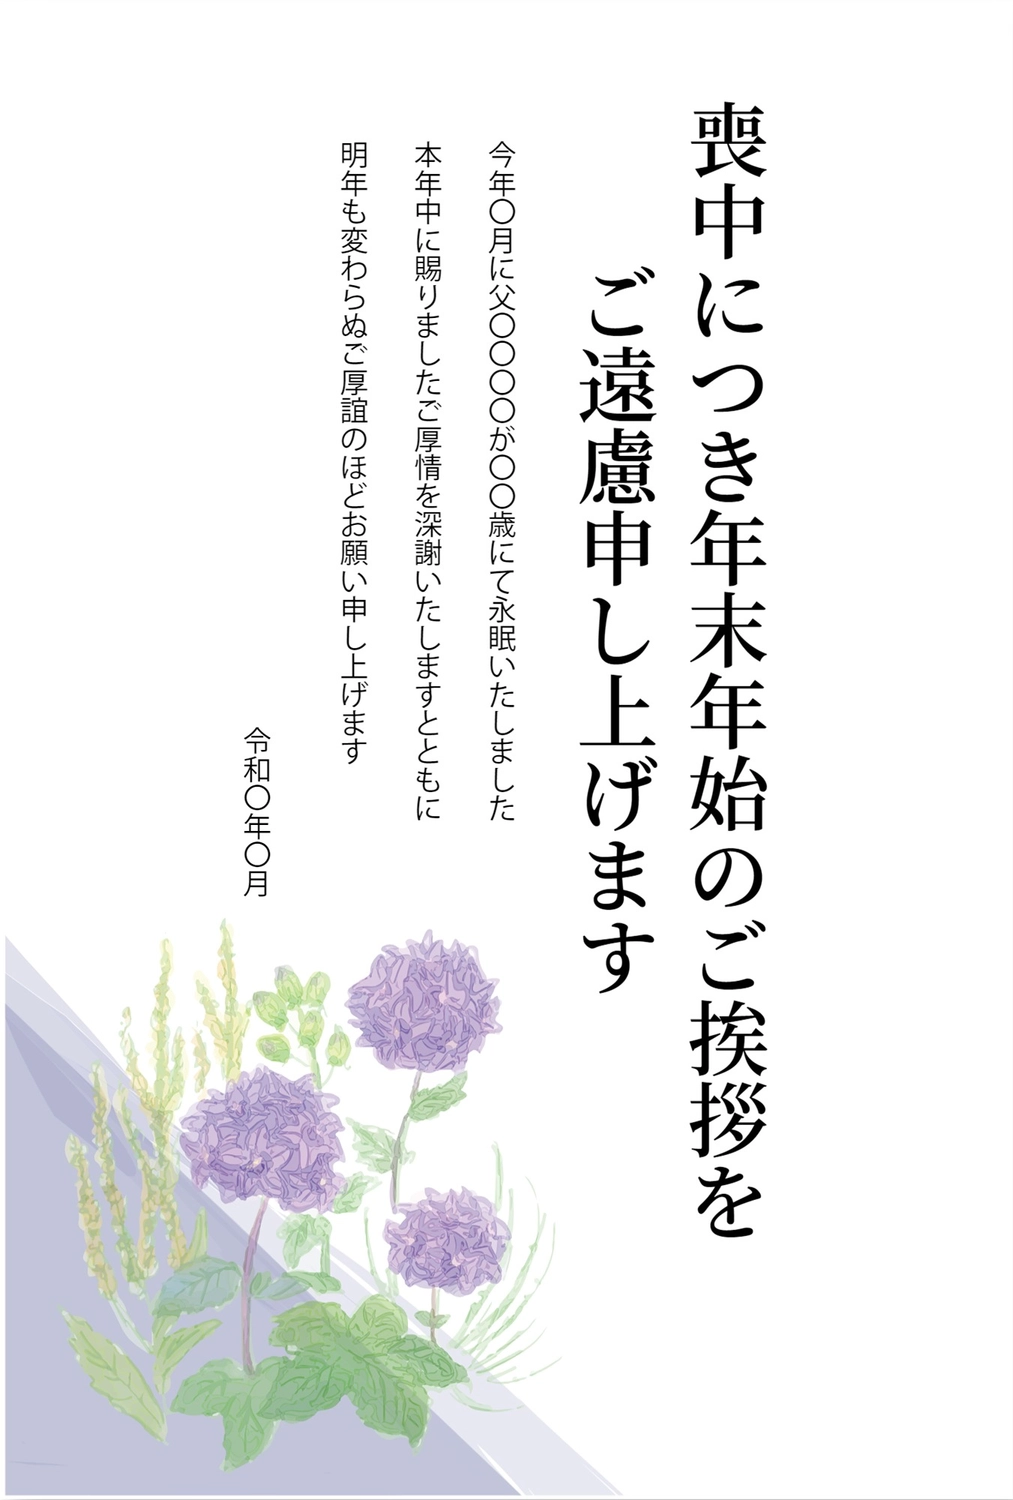 紫色の花の喪中はがき, 年賀欠礼状, 紫の花, 永眠, Bưu thiếp tang lễ mẫu